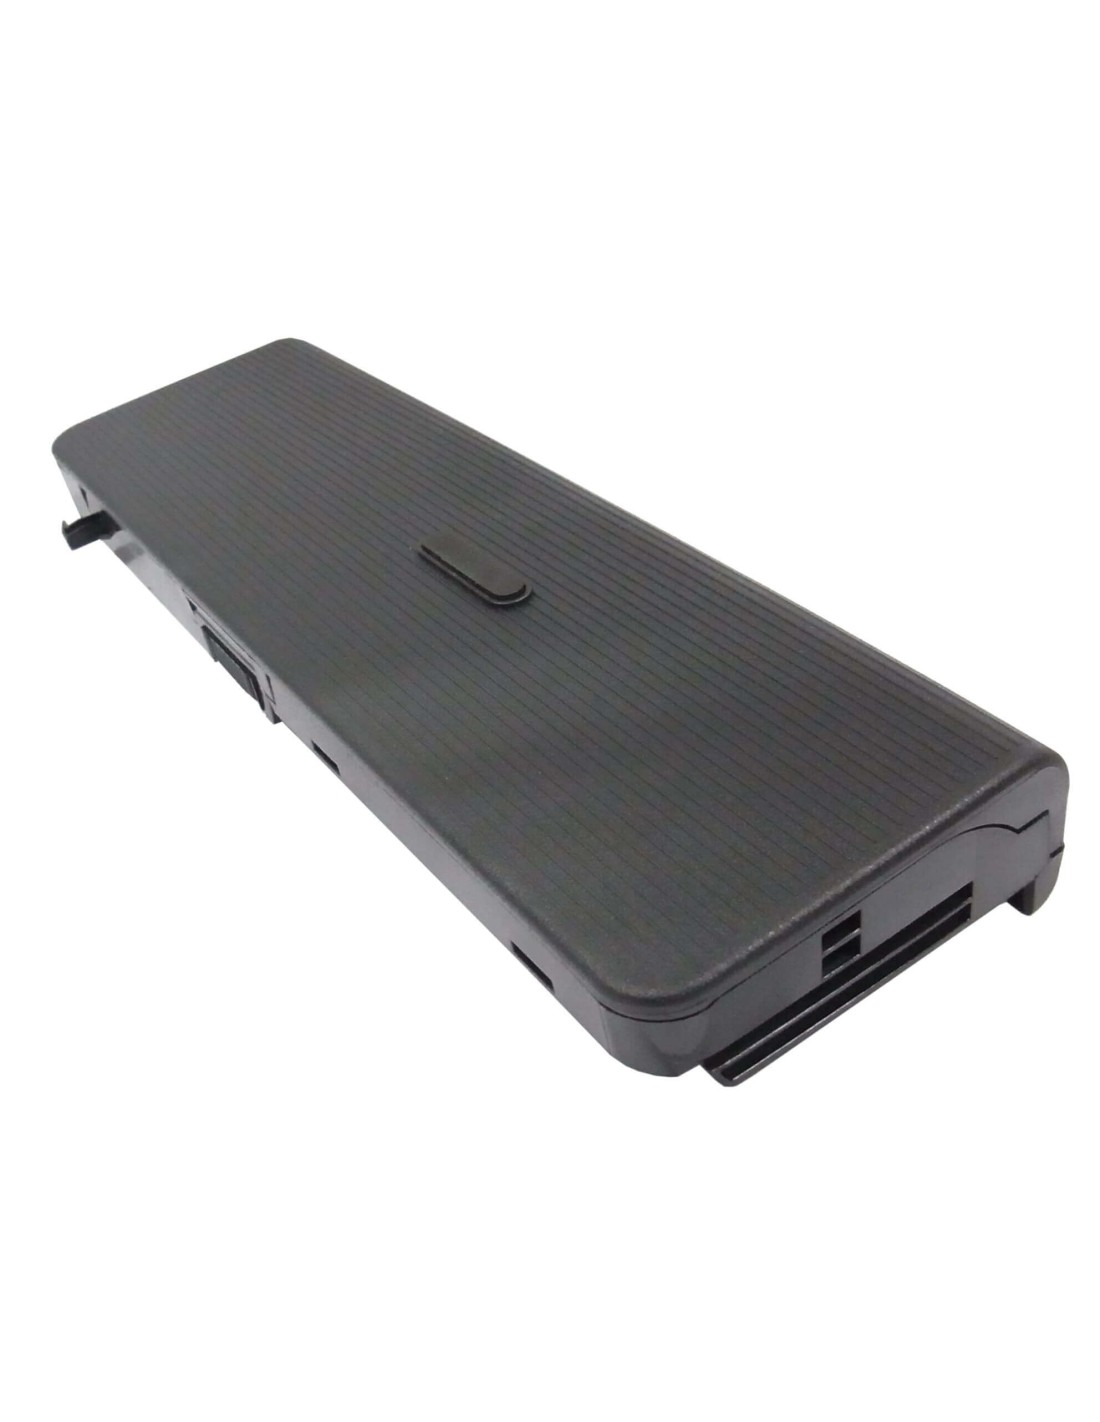 Black Battery for Medion Md96290, Md98300, Wim2160 11.1V, 6600mAh - 73.26Wh